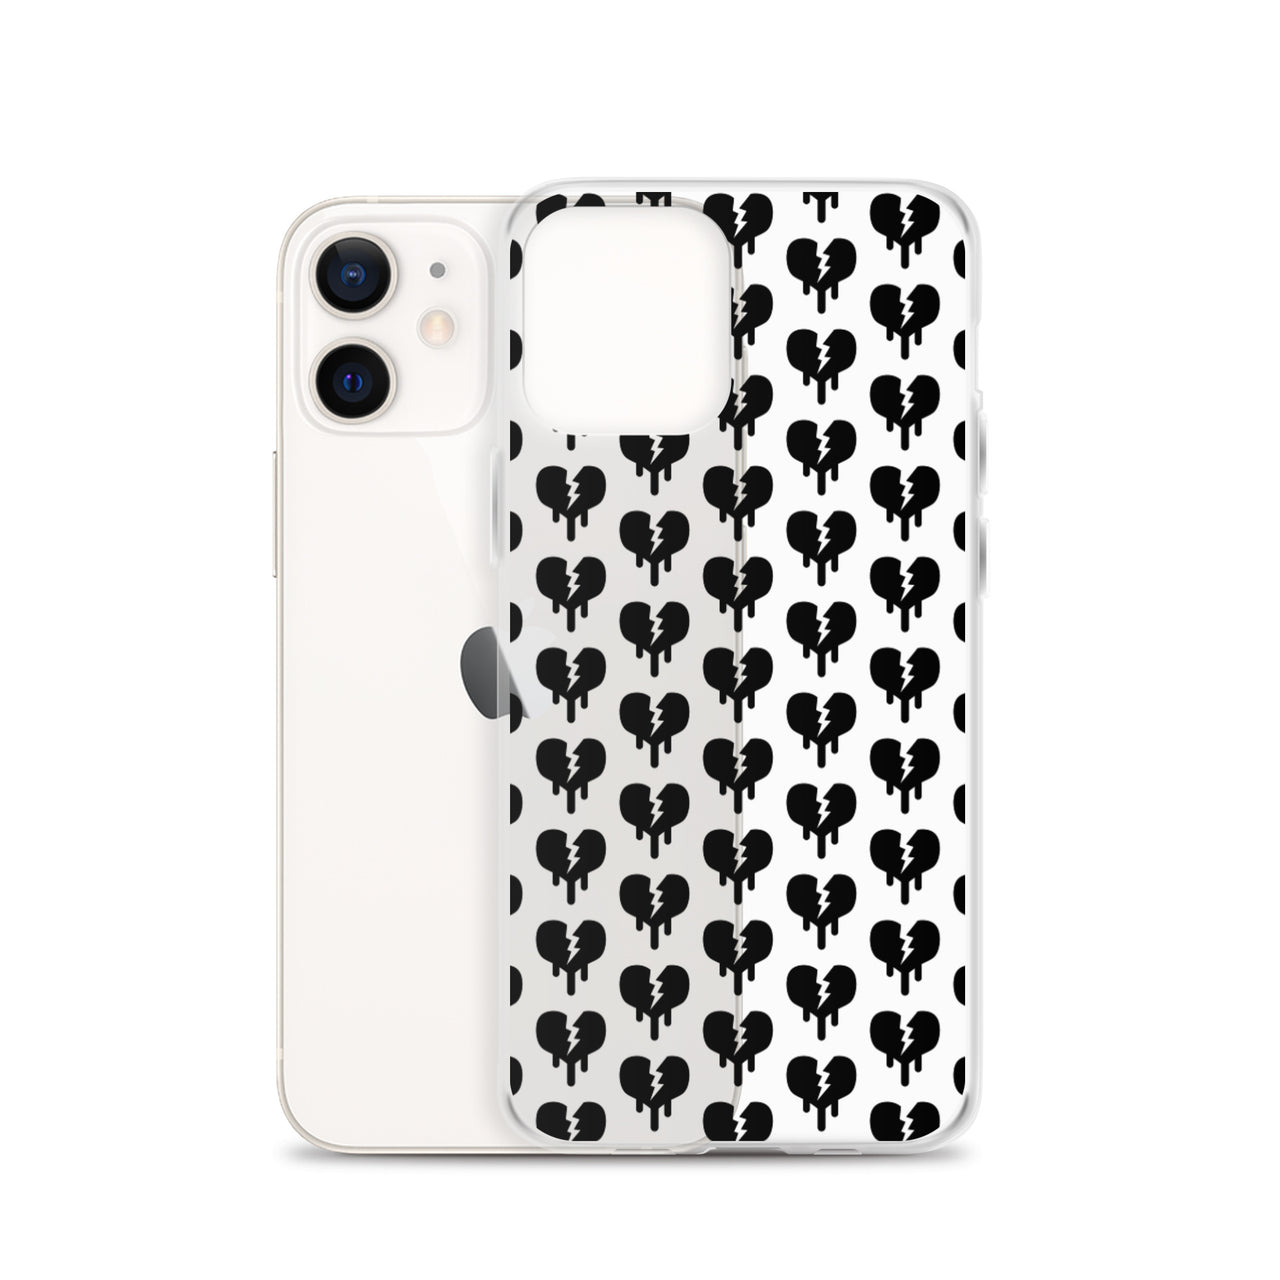 “Broken Heart” iPhone Case - Design Hero